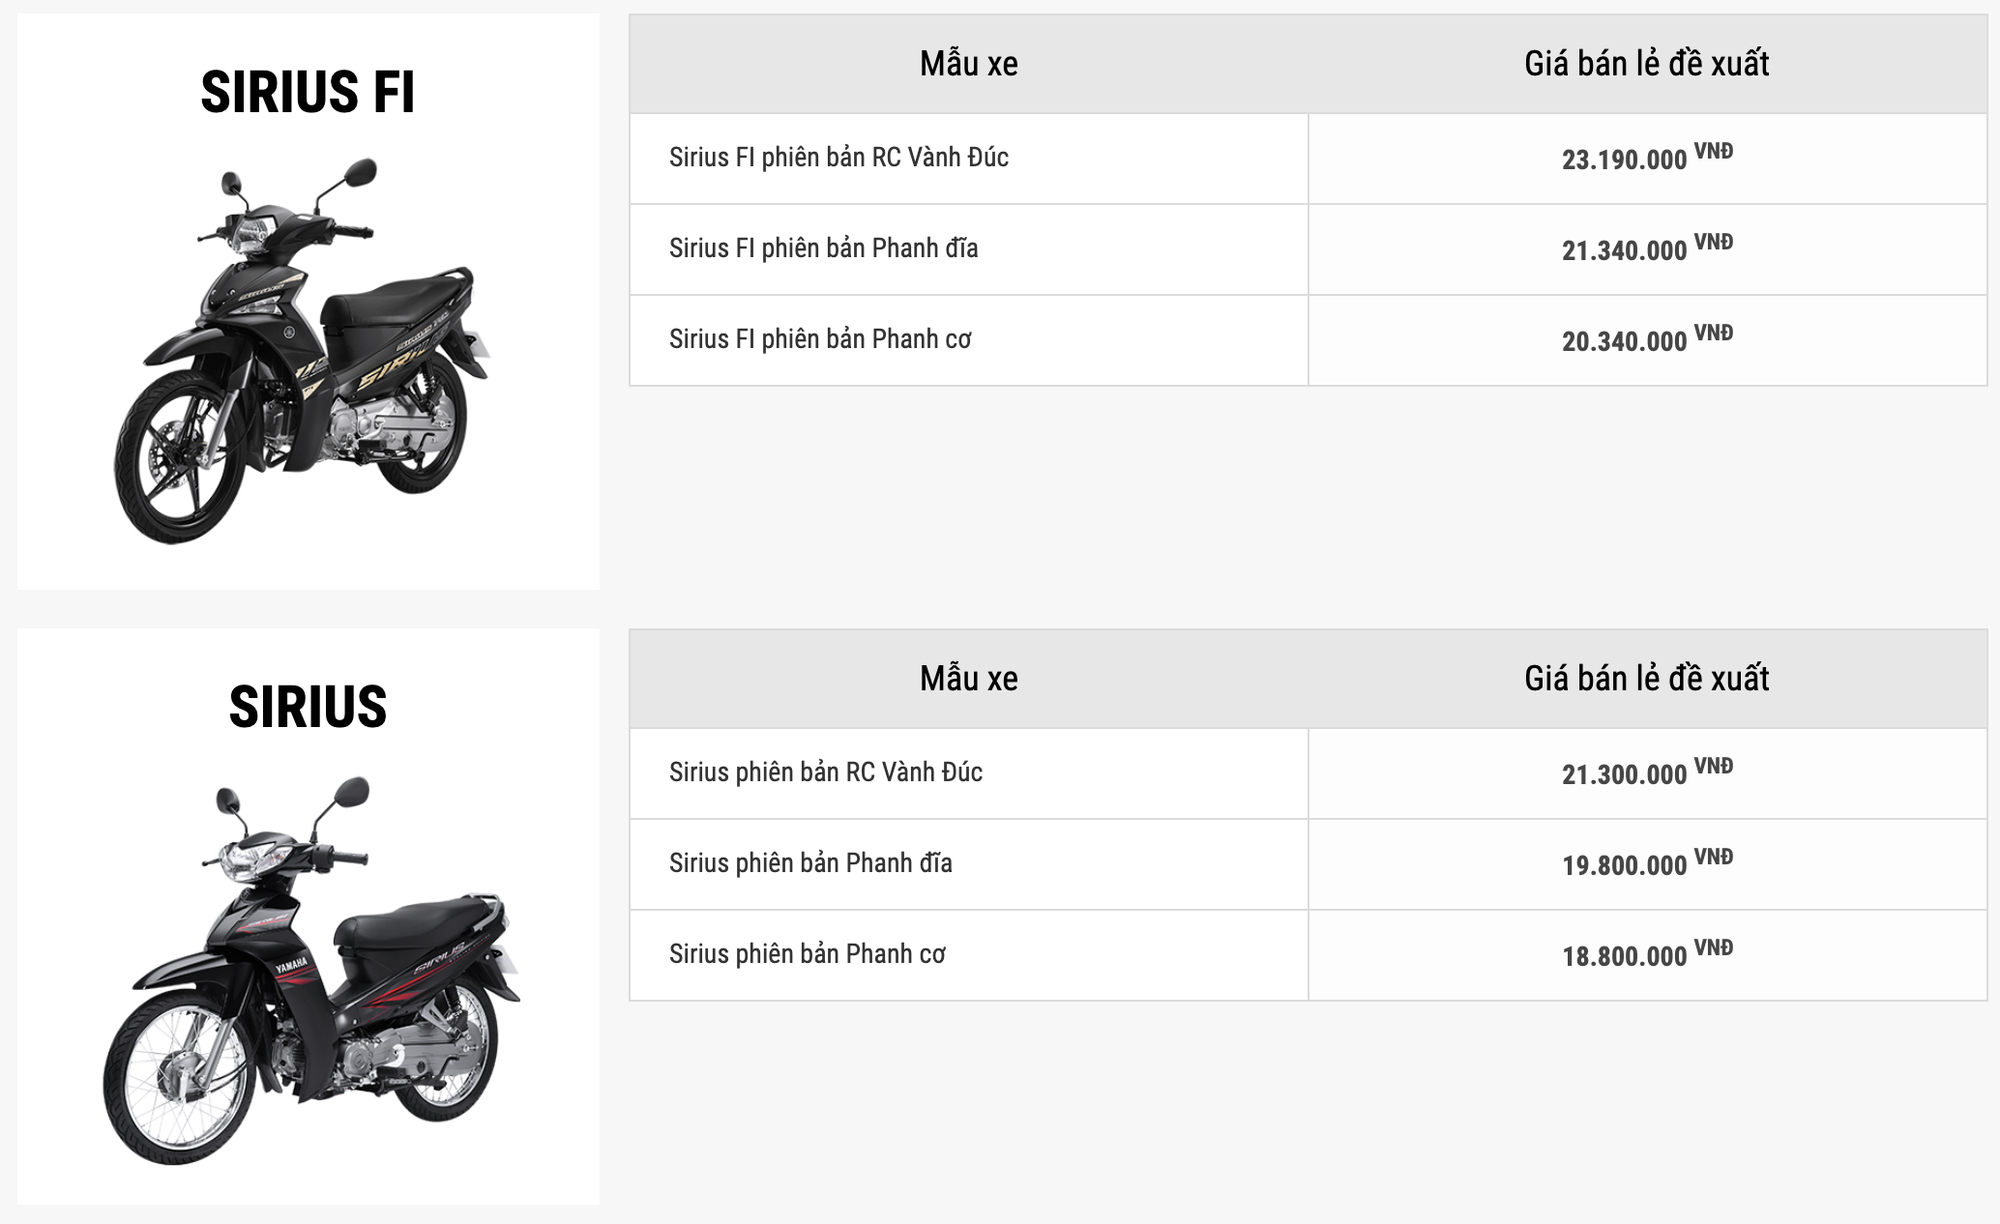 Yamaha đăng ký xe máy mới tại Việt Nam: Nhiều khả năng là dòng giá rẻ, cạnh tranh Honda Wave - Ảnh 5.